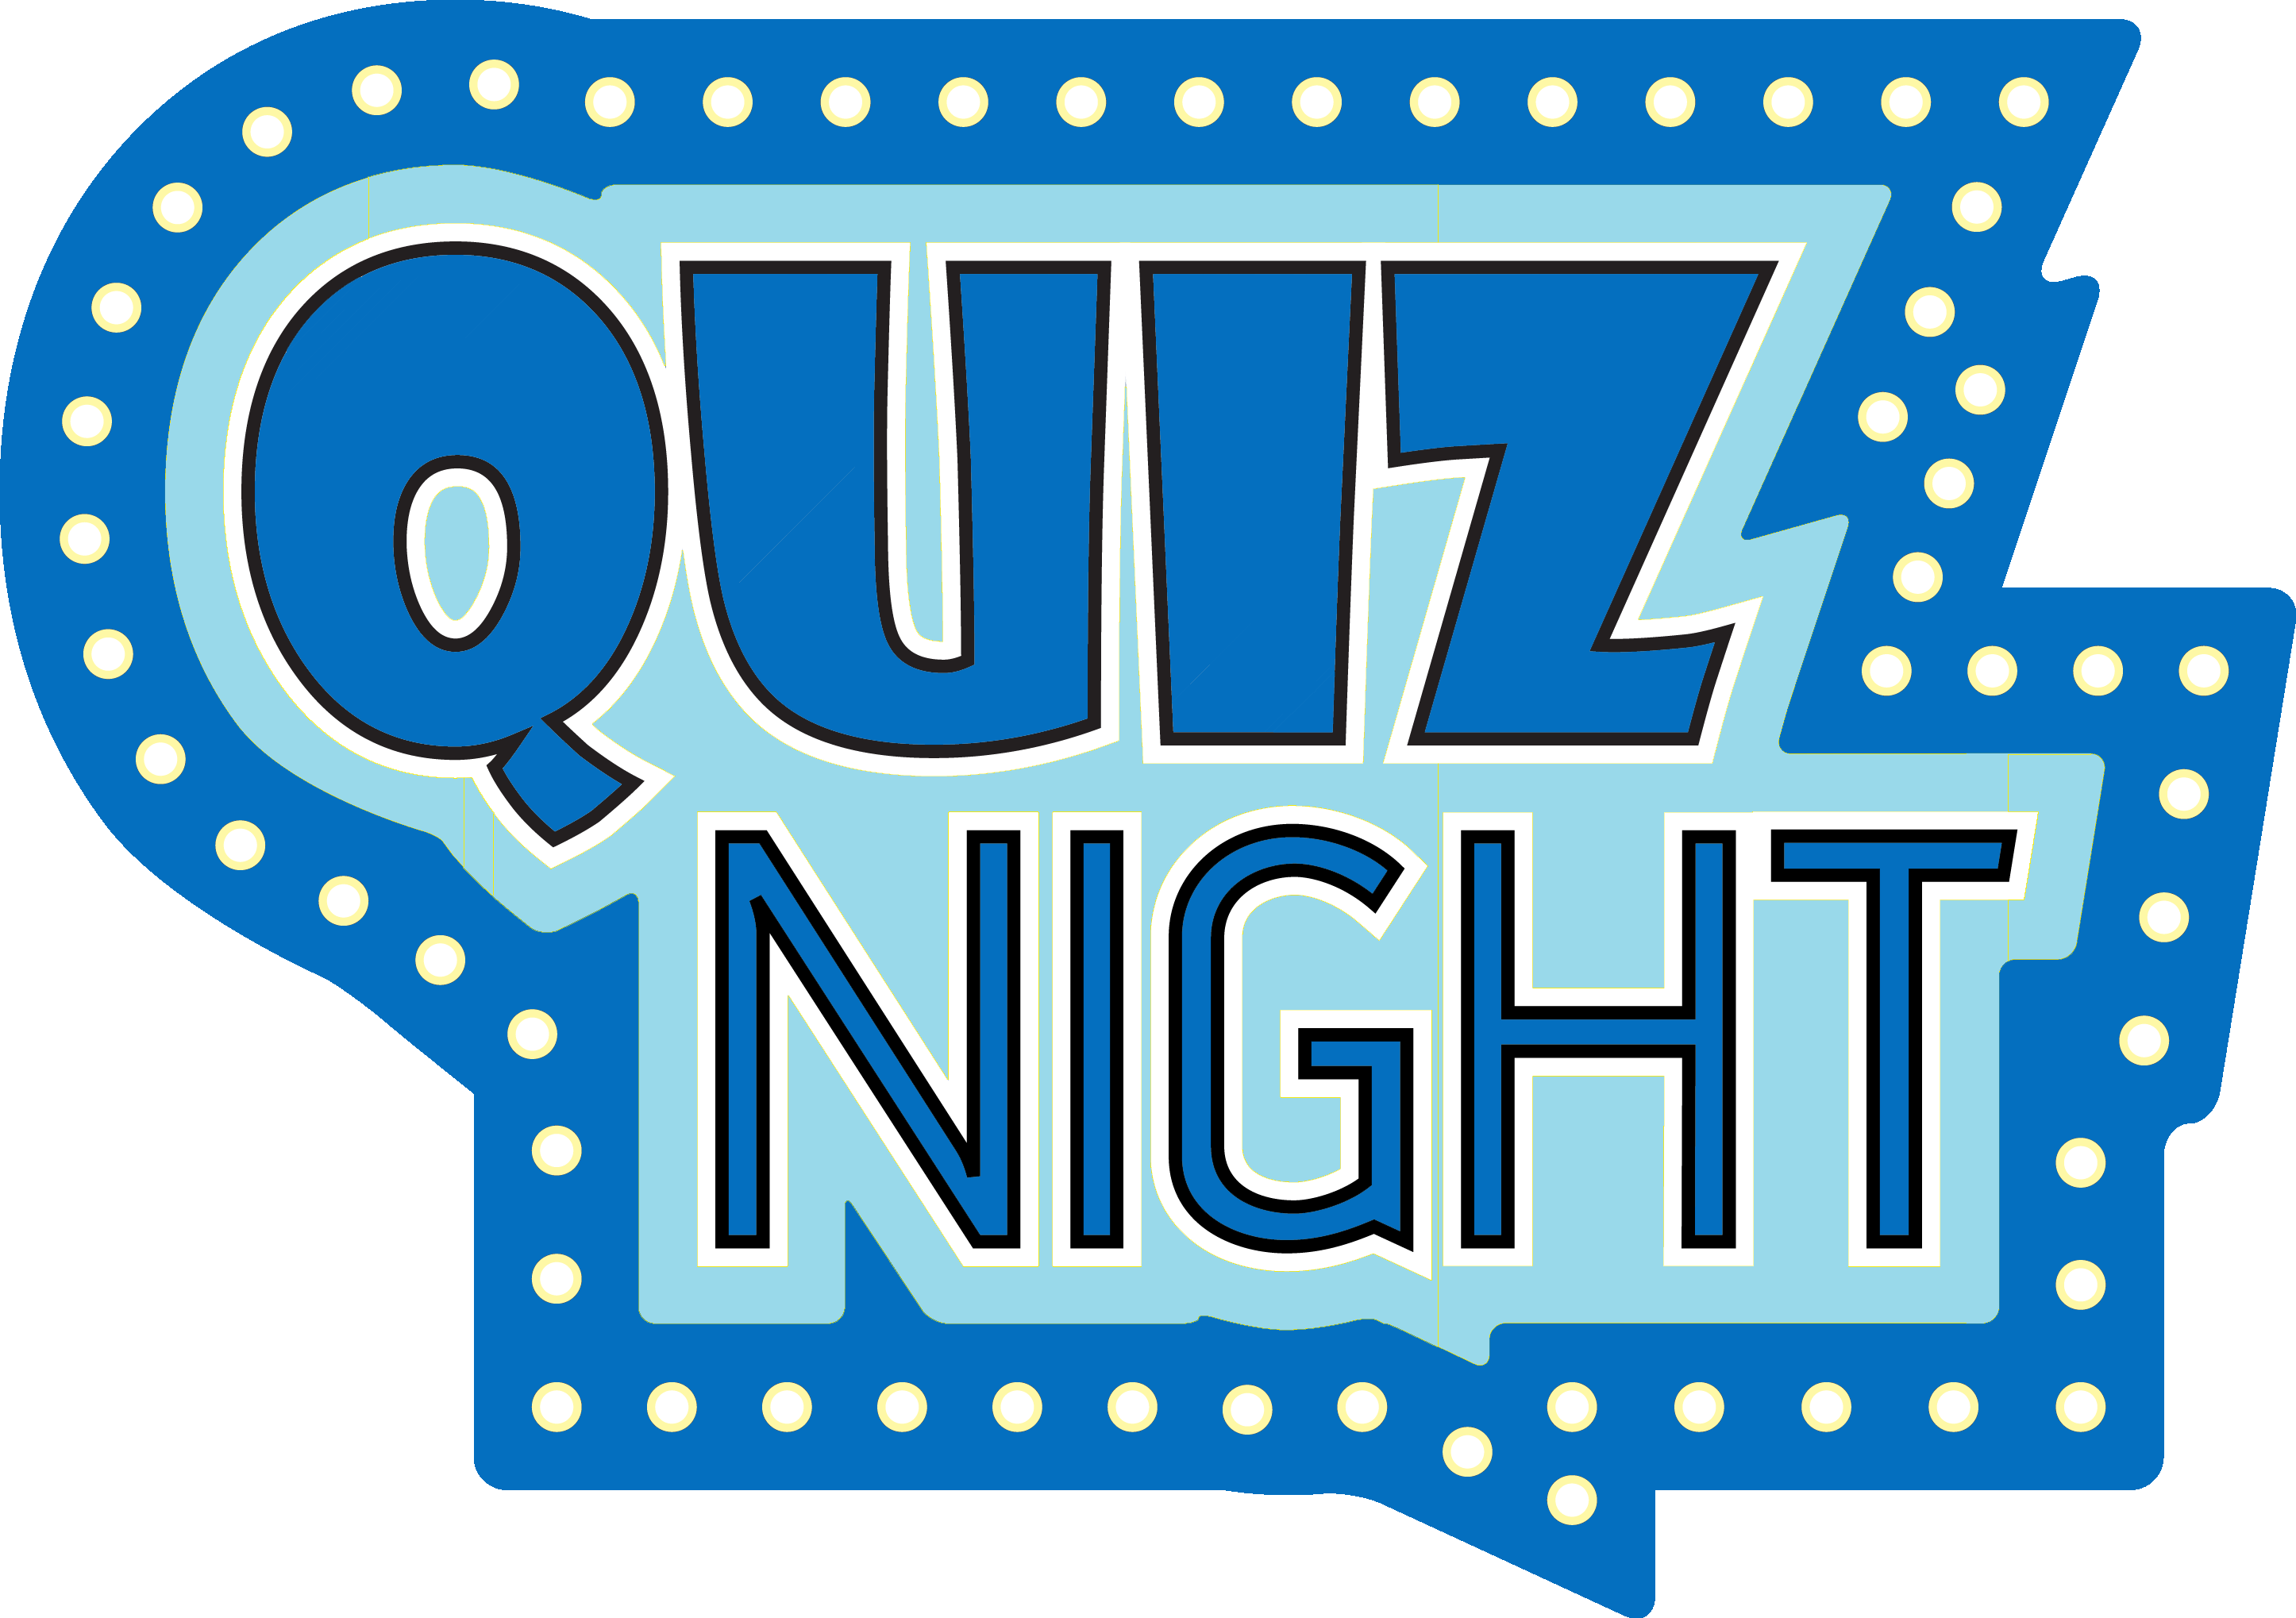 Quiz Night is back!